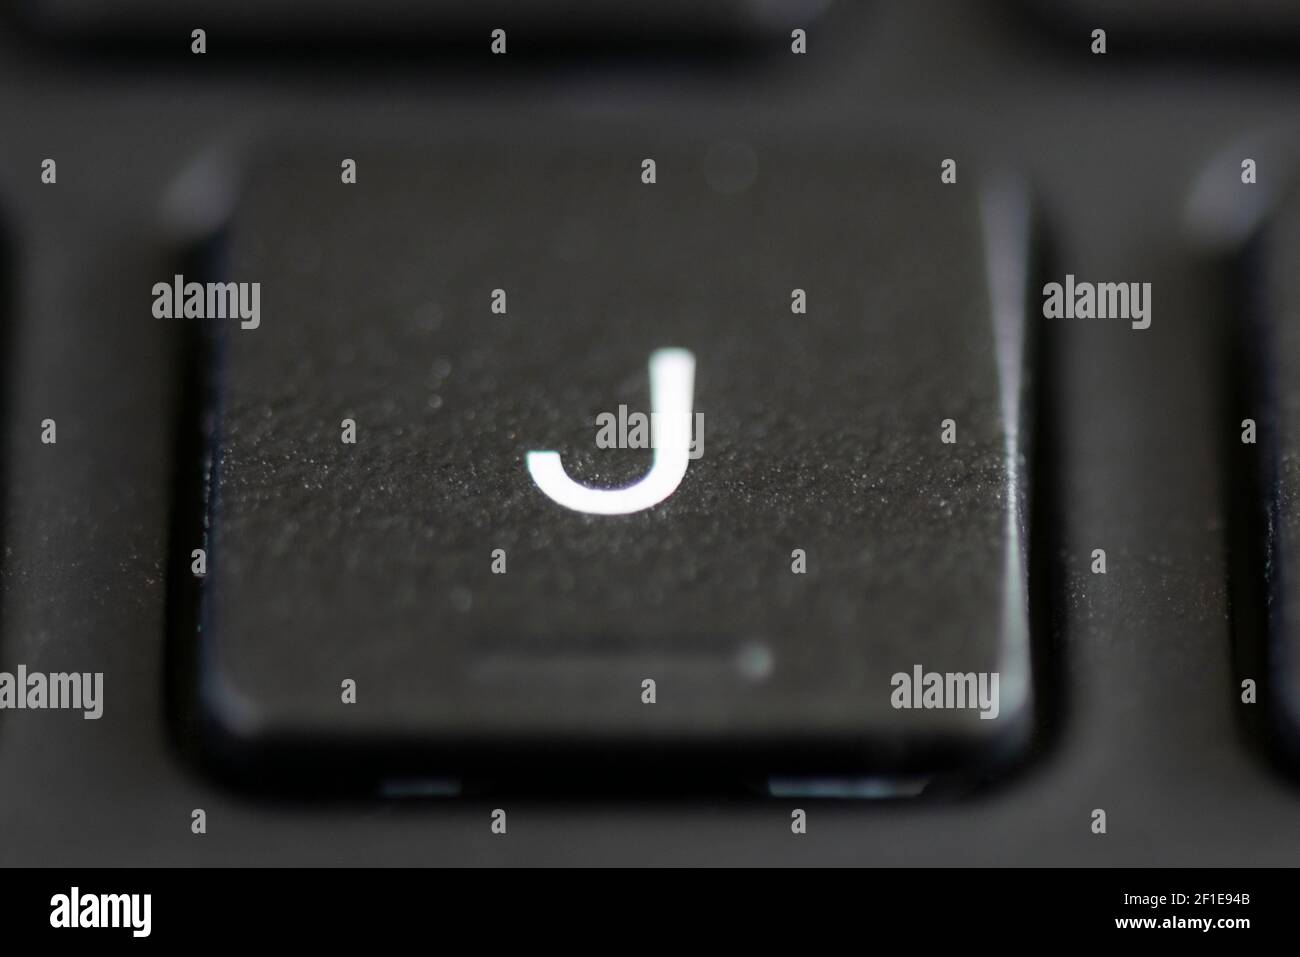 J key on a laptop keyboard Stock Photo - Alamy